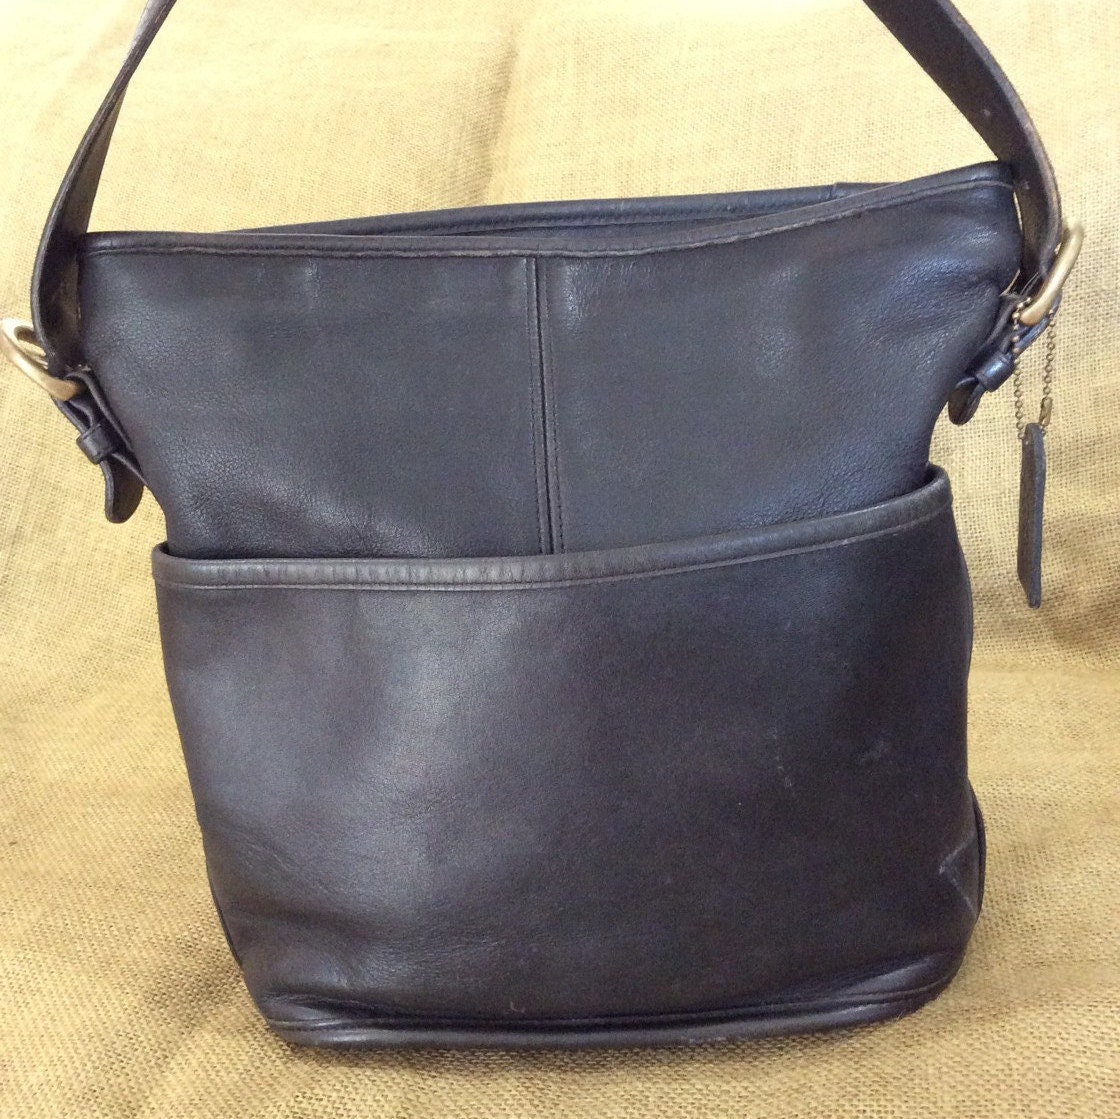 Vintage COACH black leather shoulder bag with adjustable strap